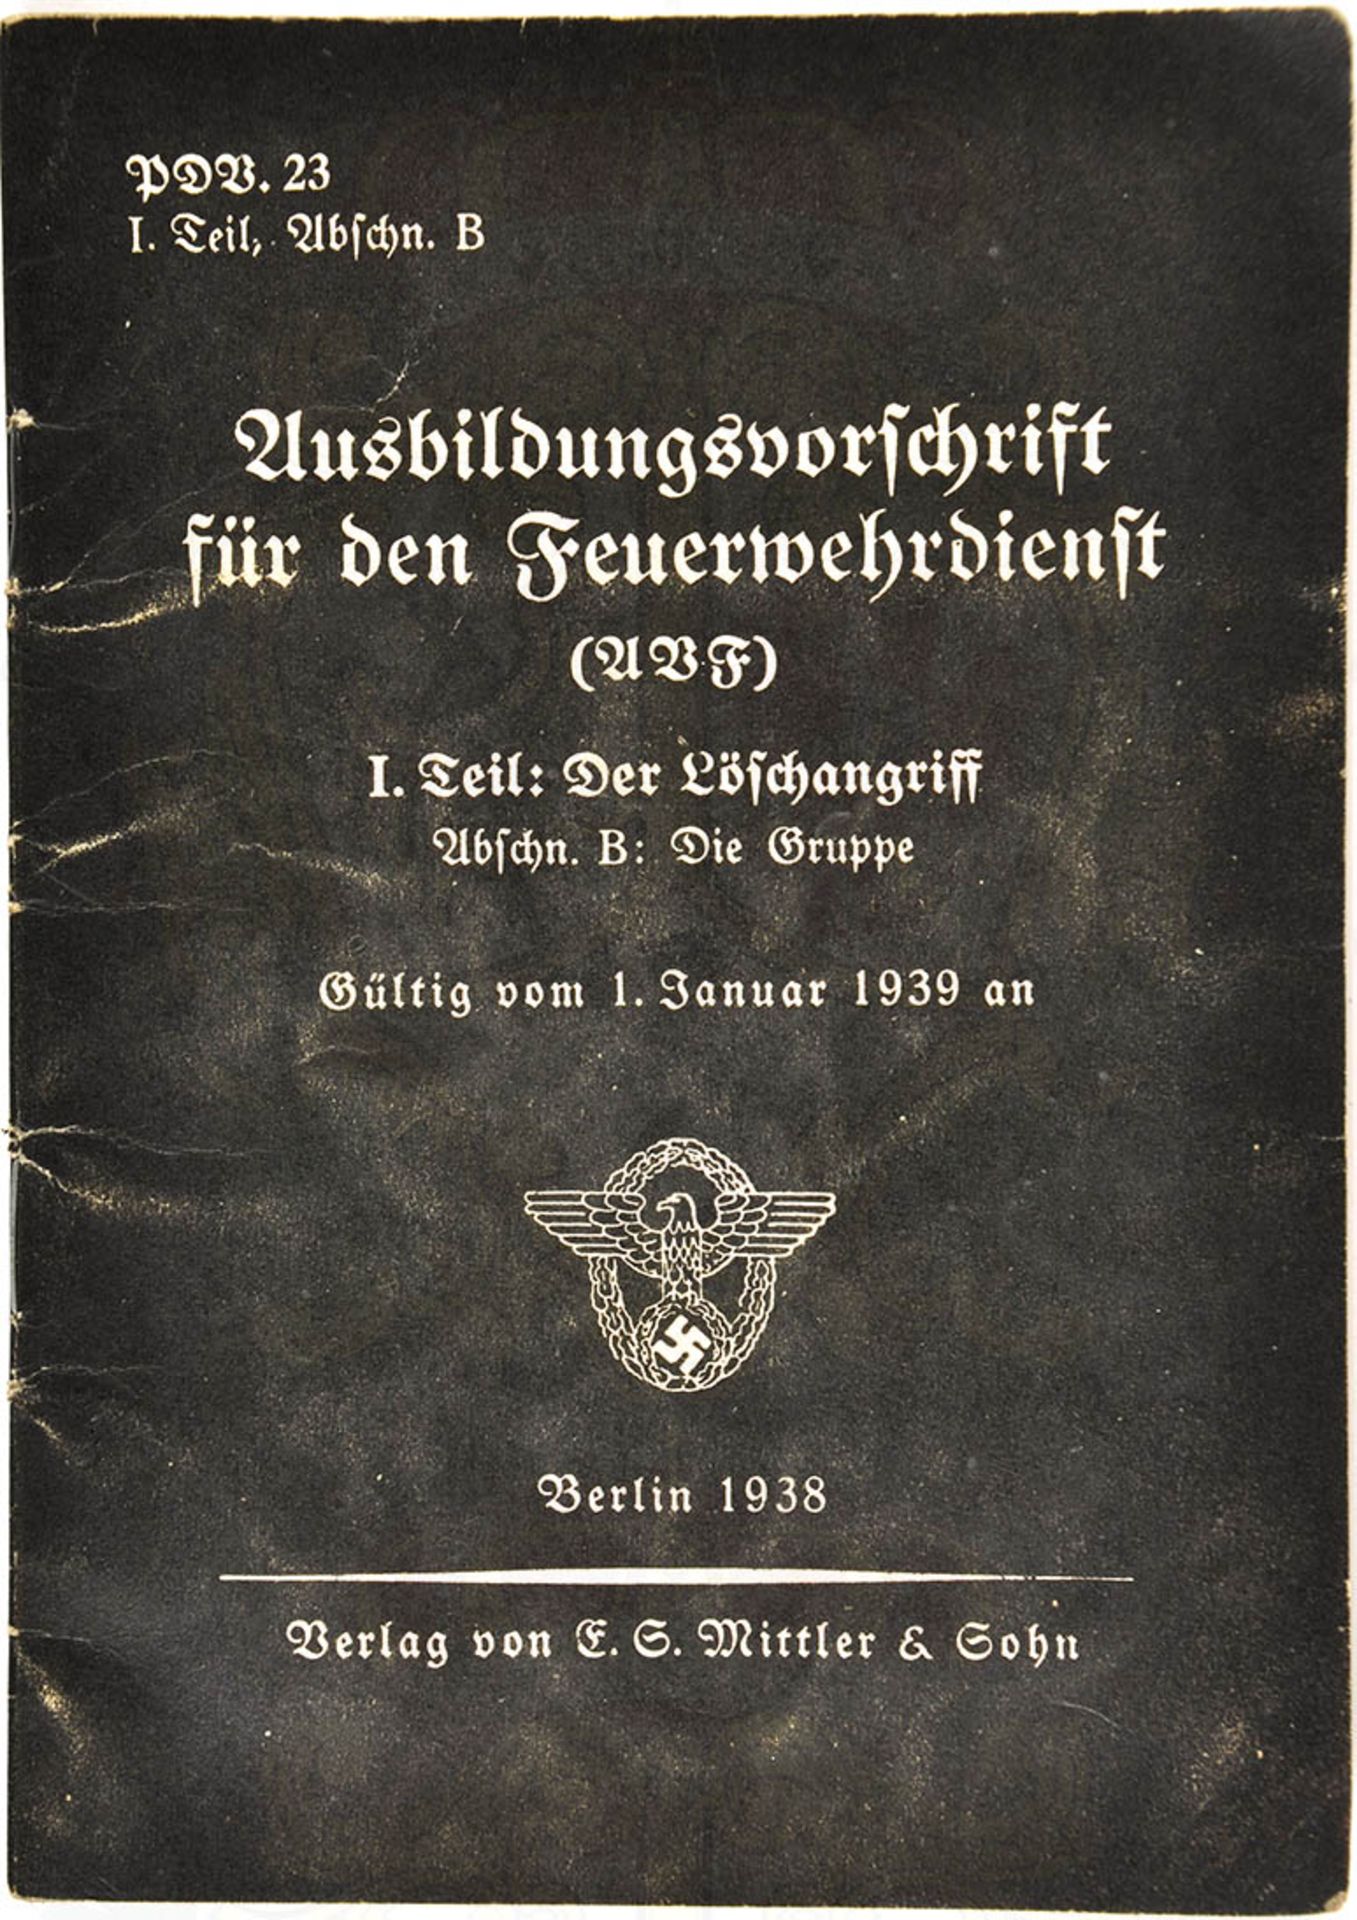 AUSBILDUNGSVORSCHRIFT FÜR DEN FEUERWEHRDIENST, I. Teil, 1938, 16 S., kart. < 1051660F, Zustand: